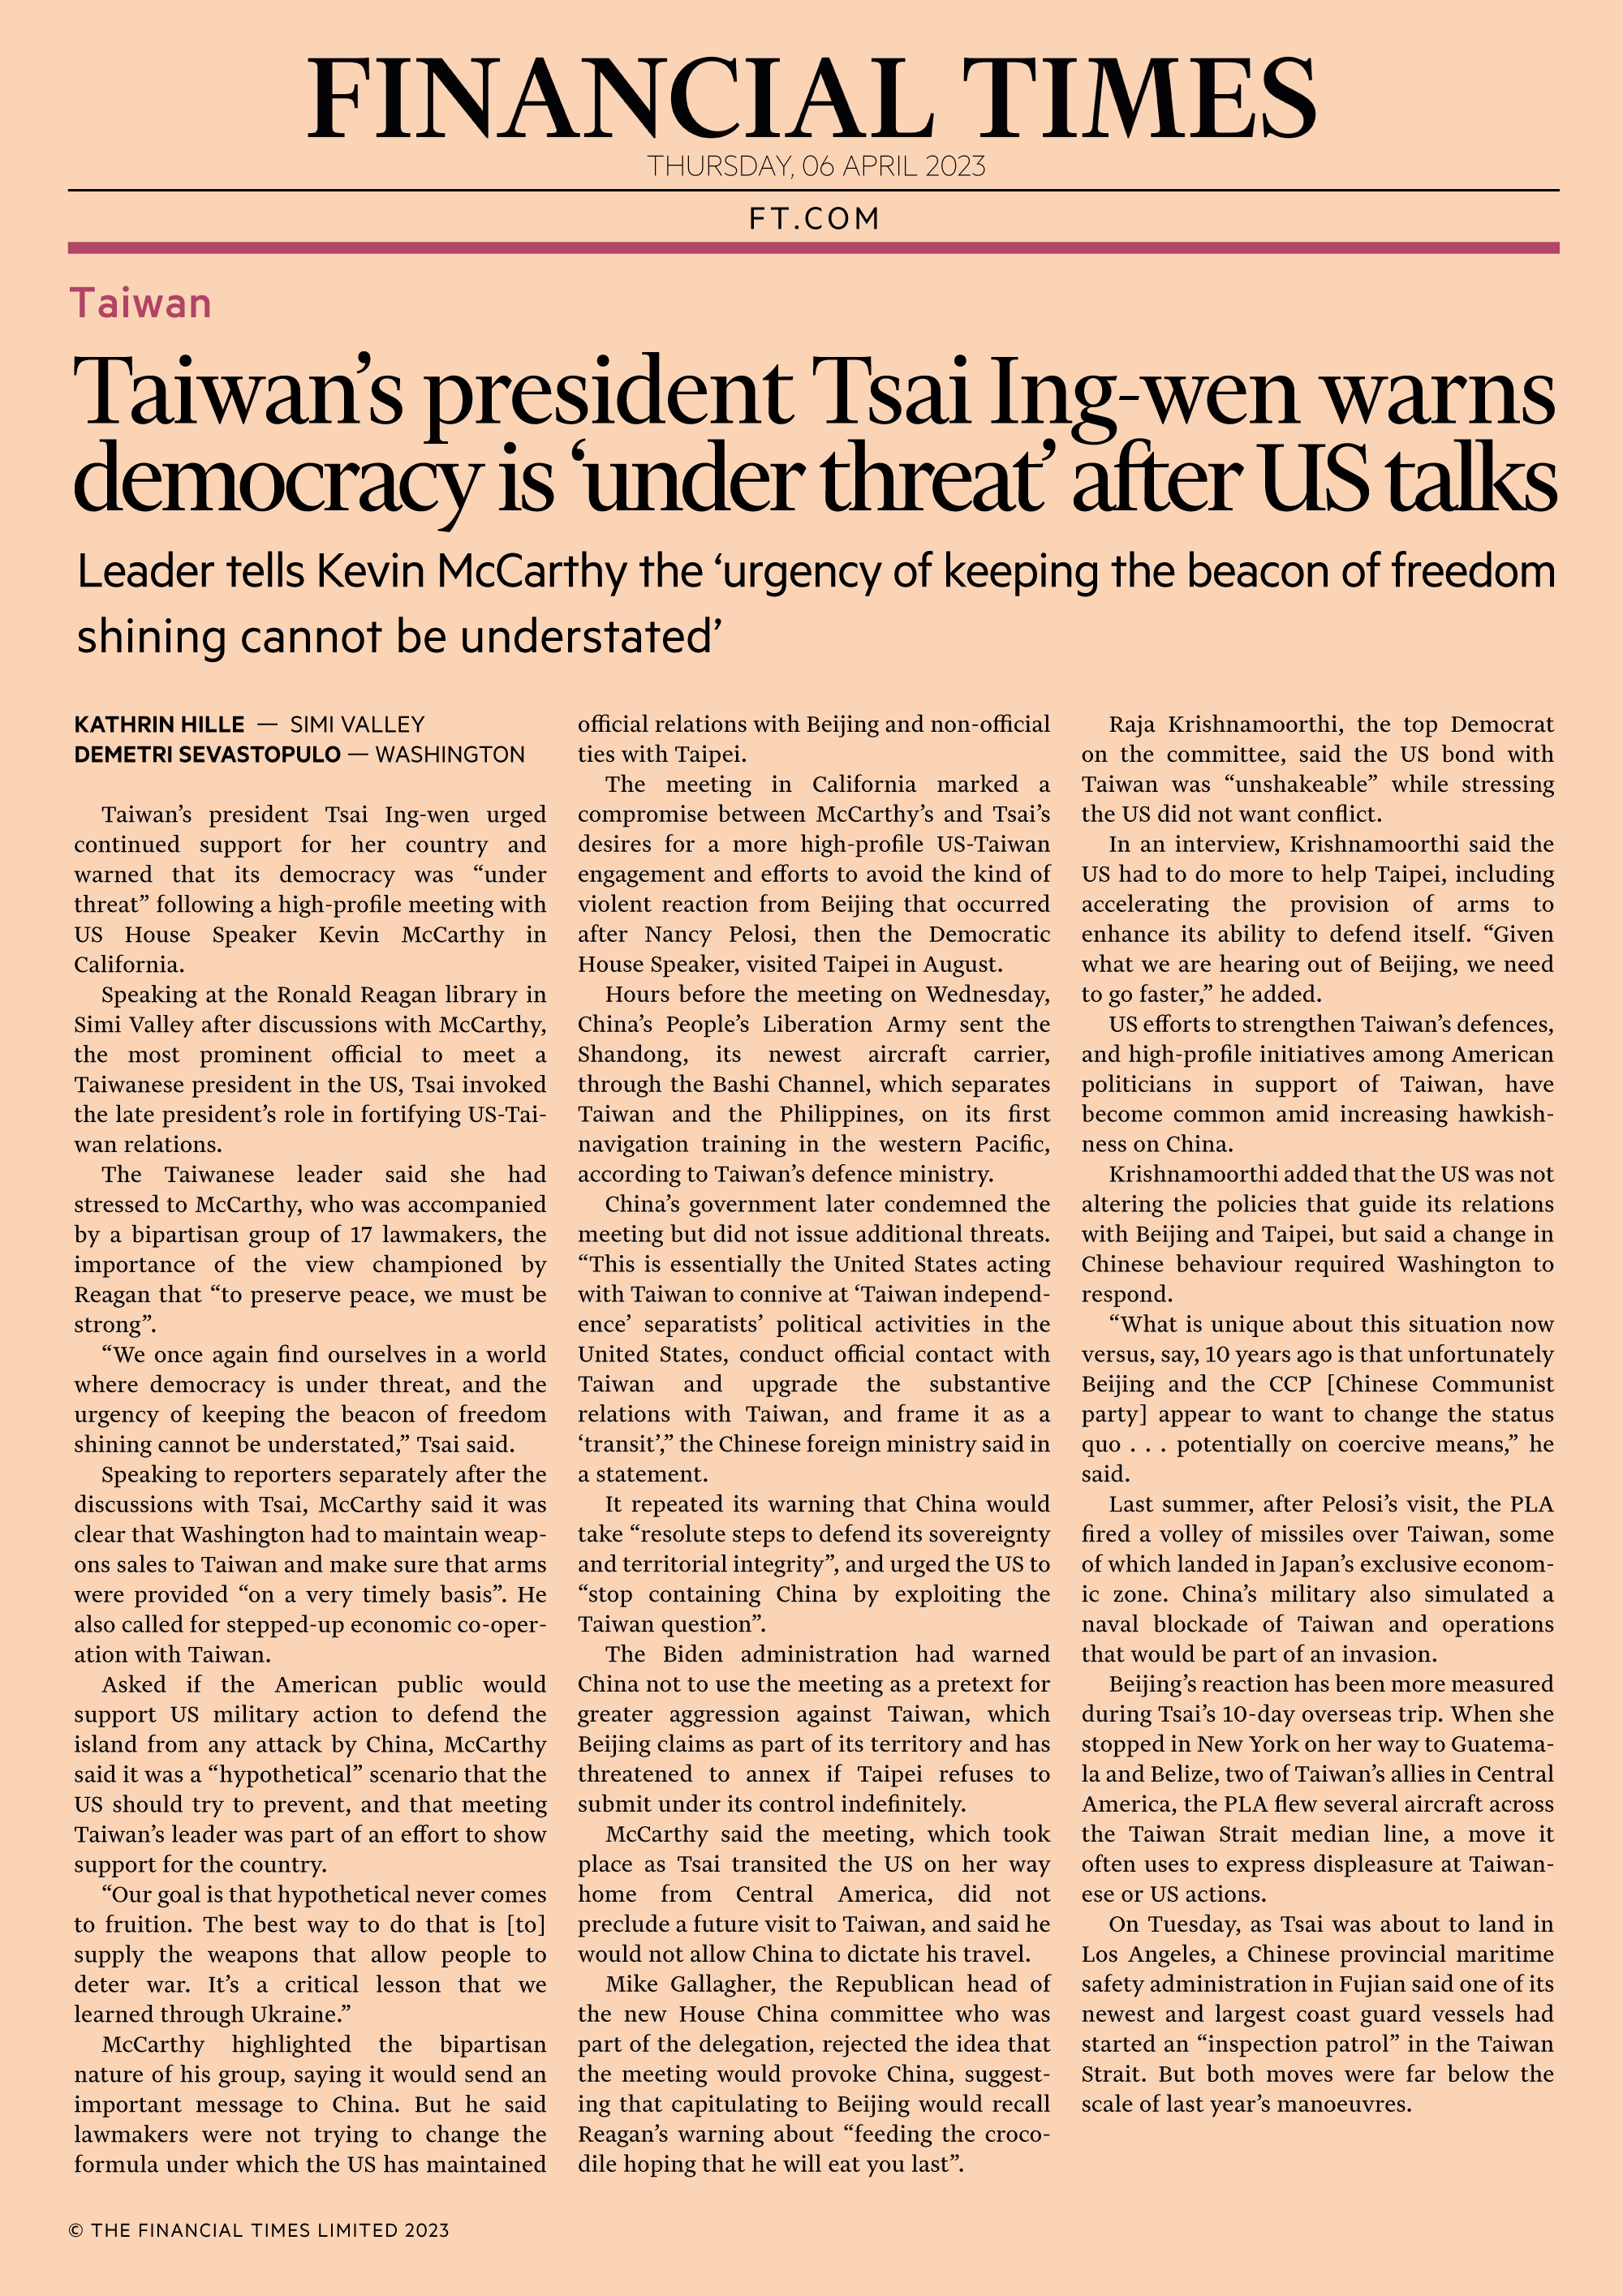 La Presidenta de Taiwán, Tsai Ing-wen, advierte que la democracia está en peligro después de conversaciones con EE. UU.